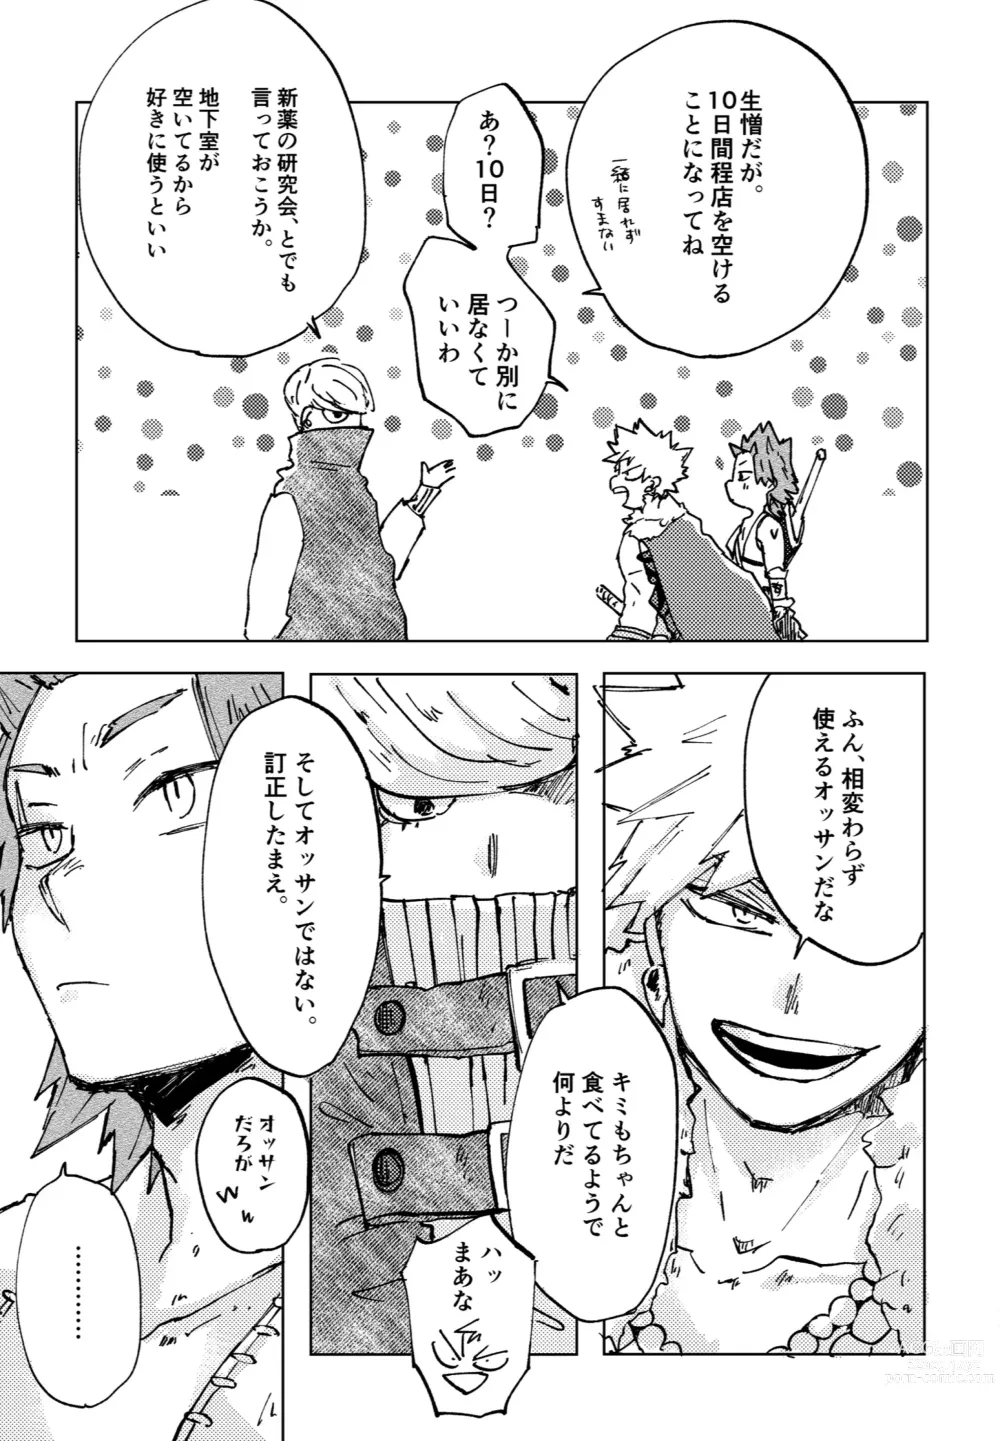 Page 29 of doujinshi Futatsu no Inochi